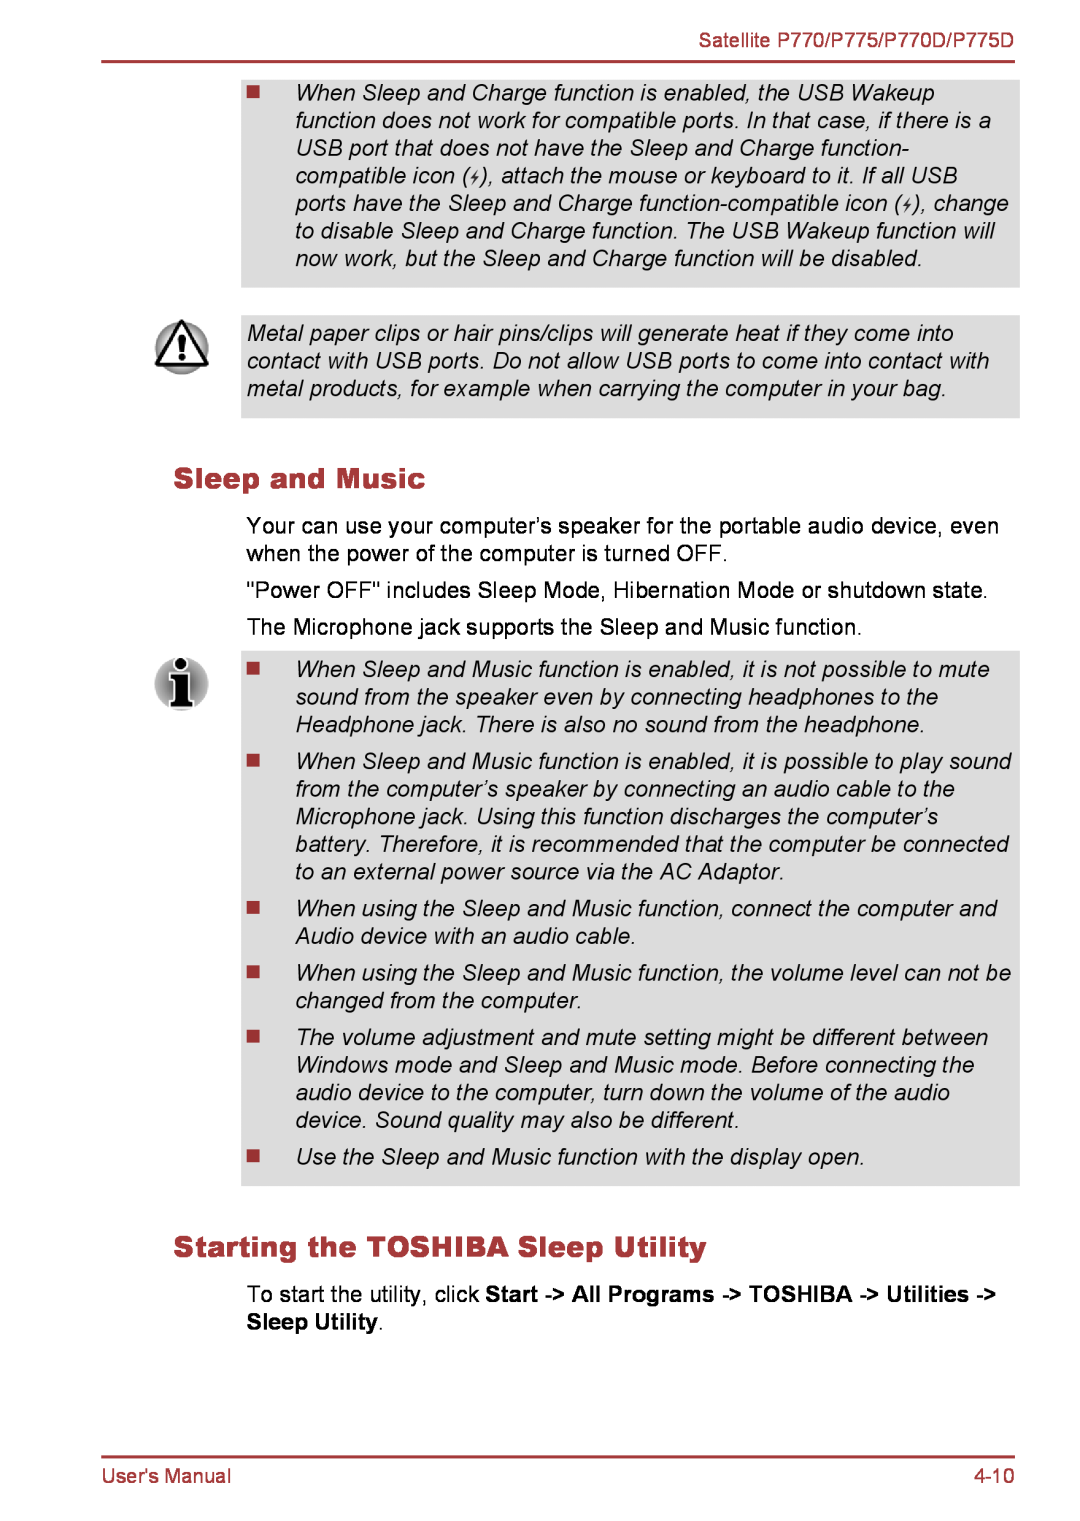 Toshiba P770 user manual Sleep and Music, Starting the TOSHIBA Sleep Utility 